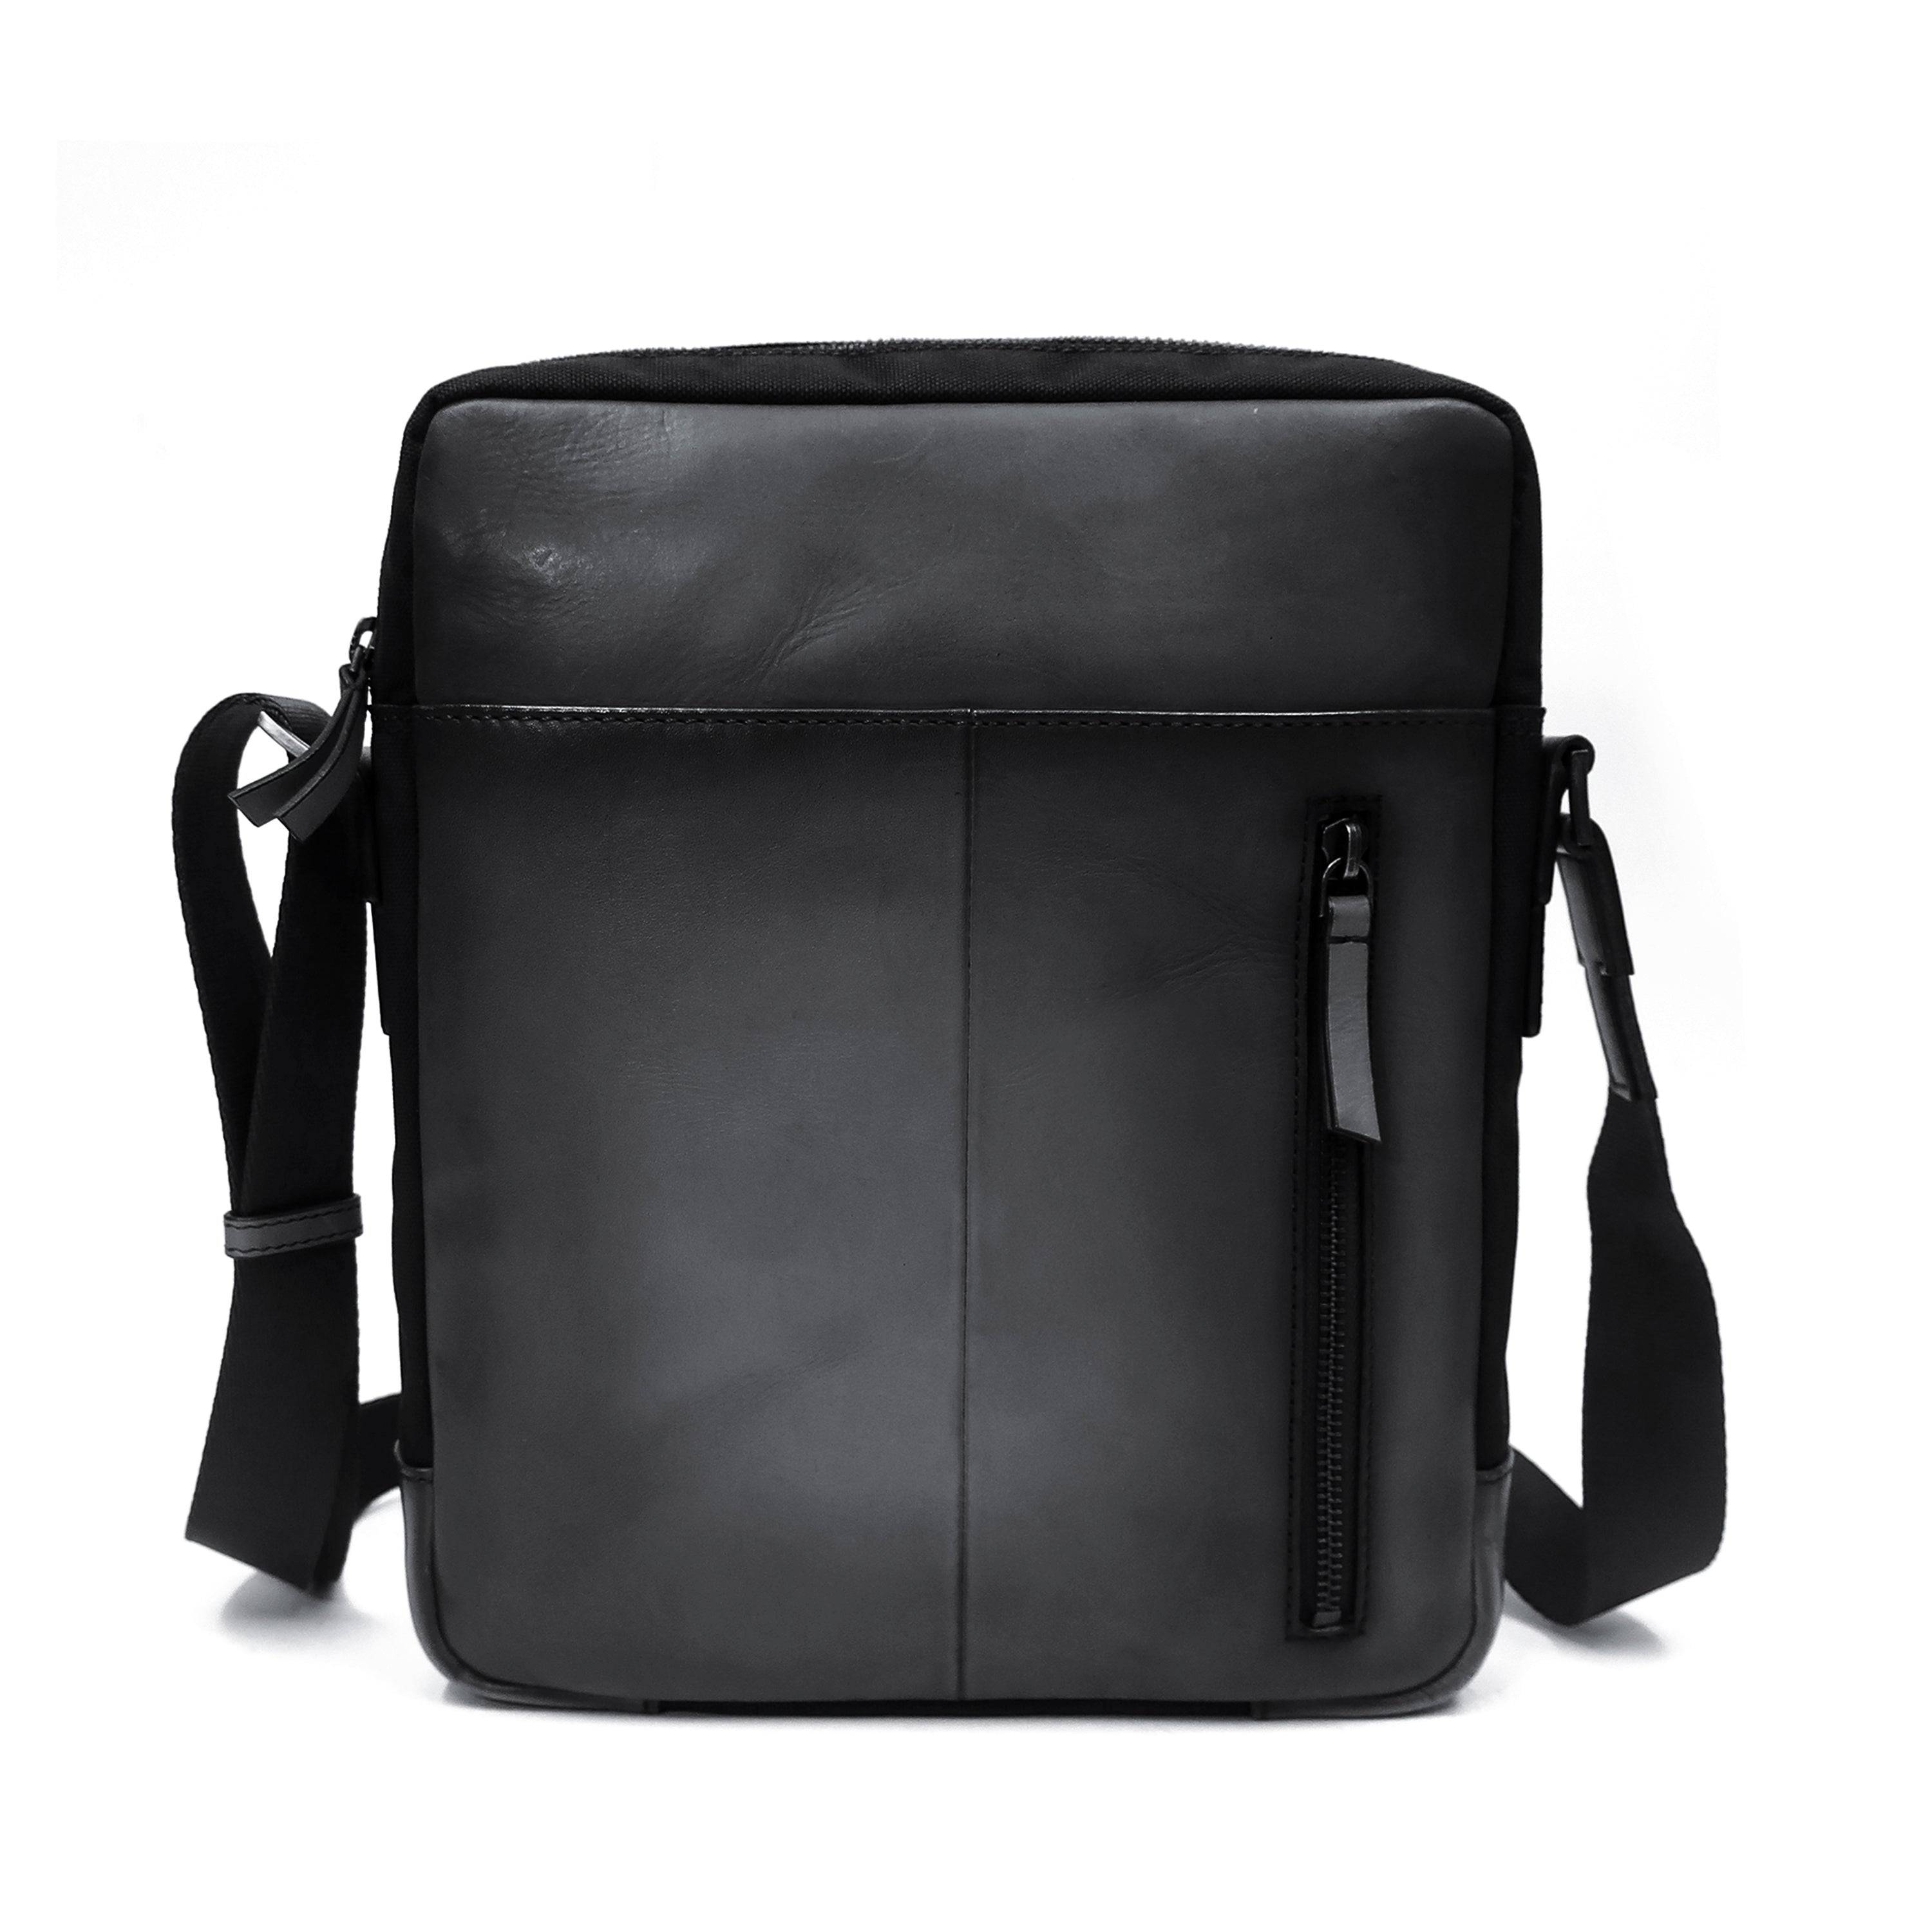 a black leather messenger bag with a shoulder strap